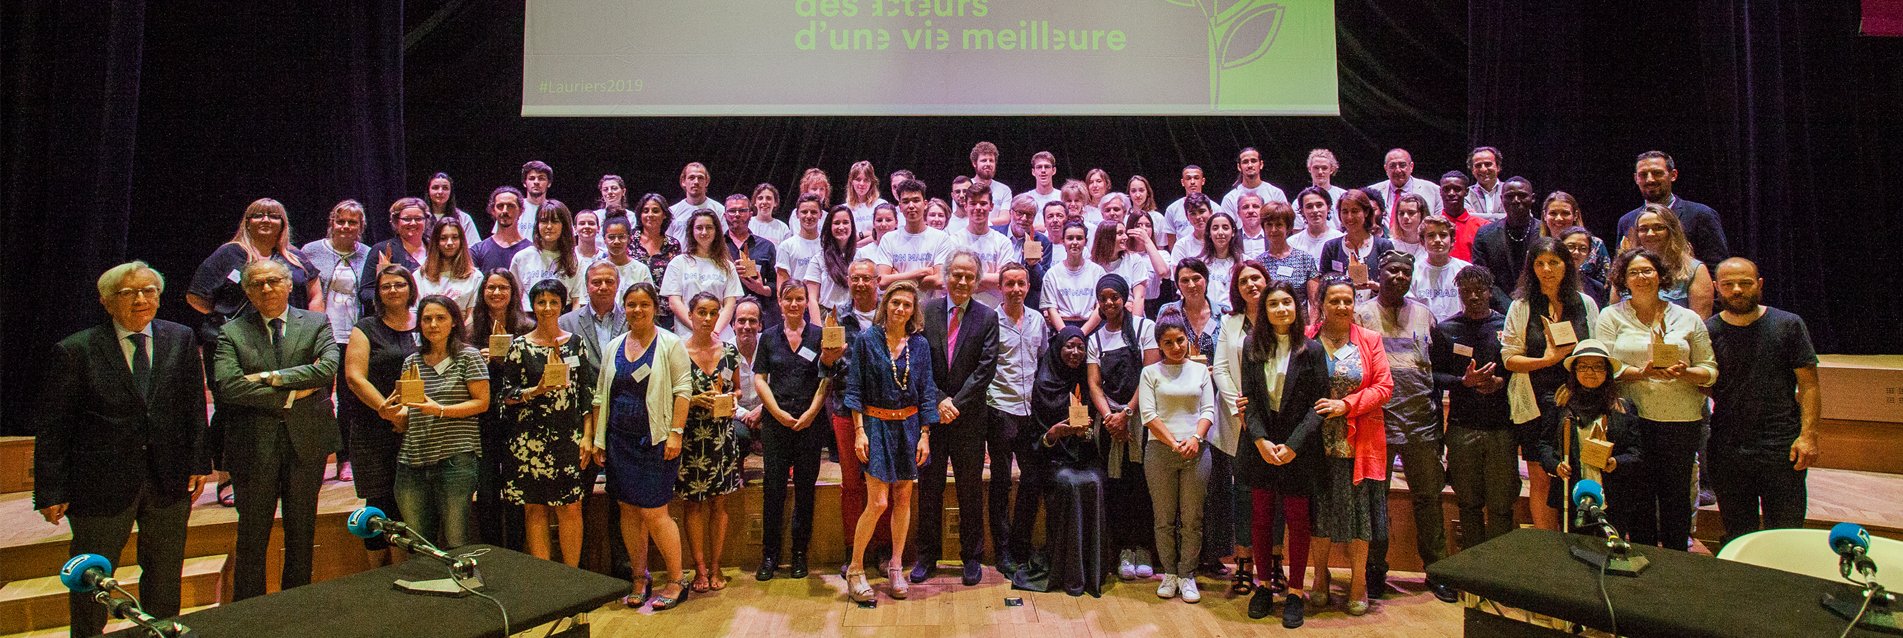 Lauriers 2019, la Fondation de France célèbre l’engagement